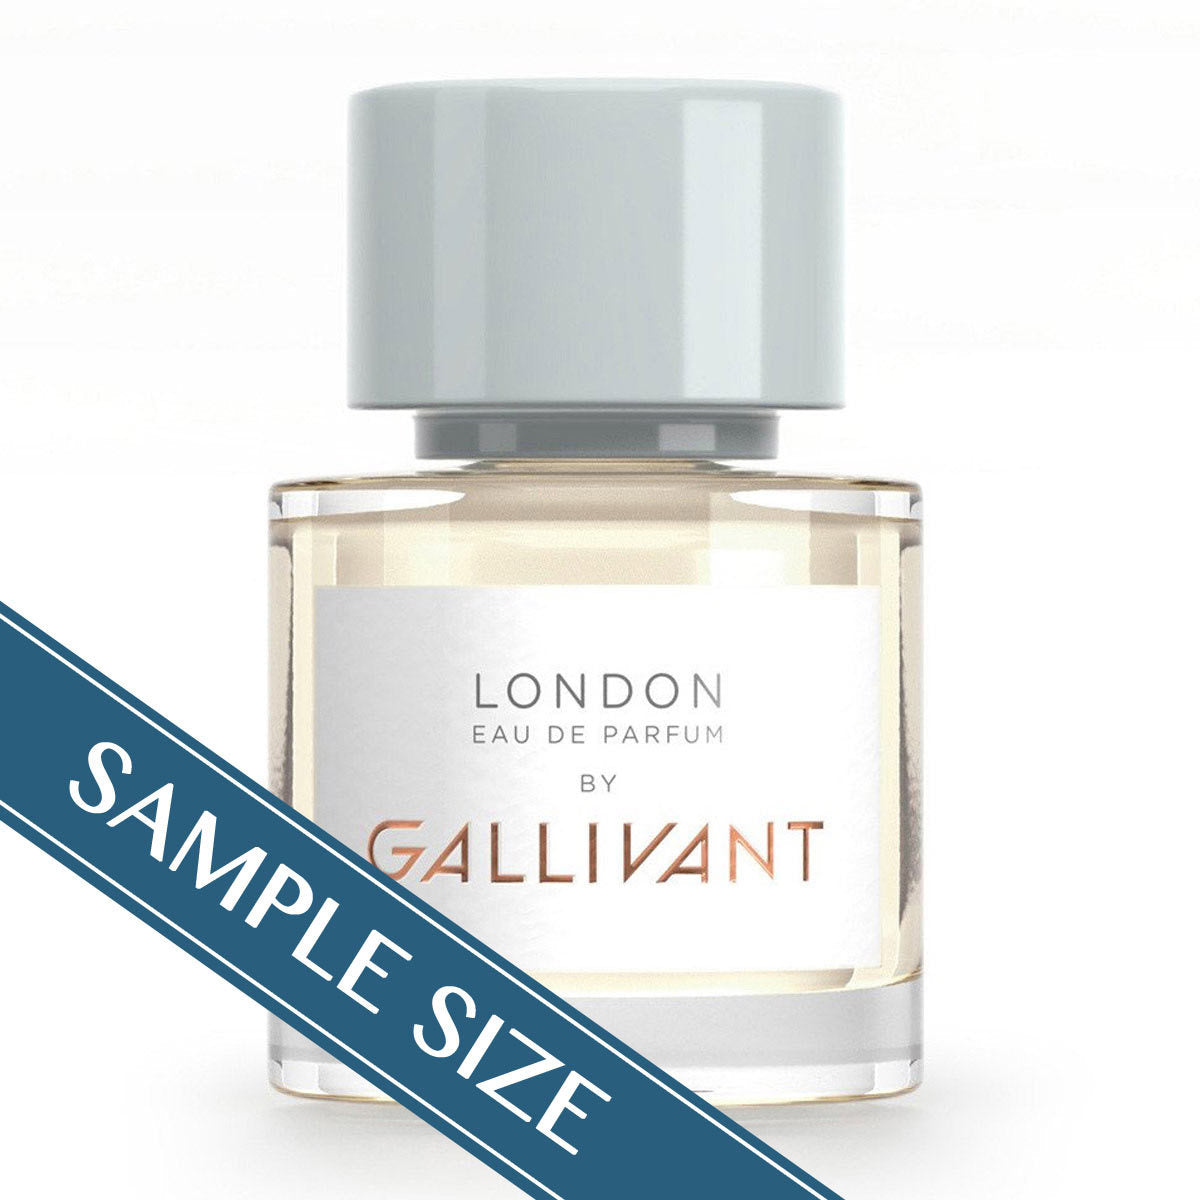 Primary image of Sample - London Eau de Parfum